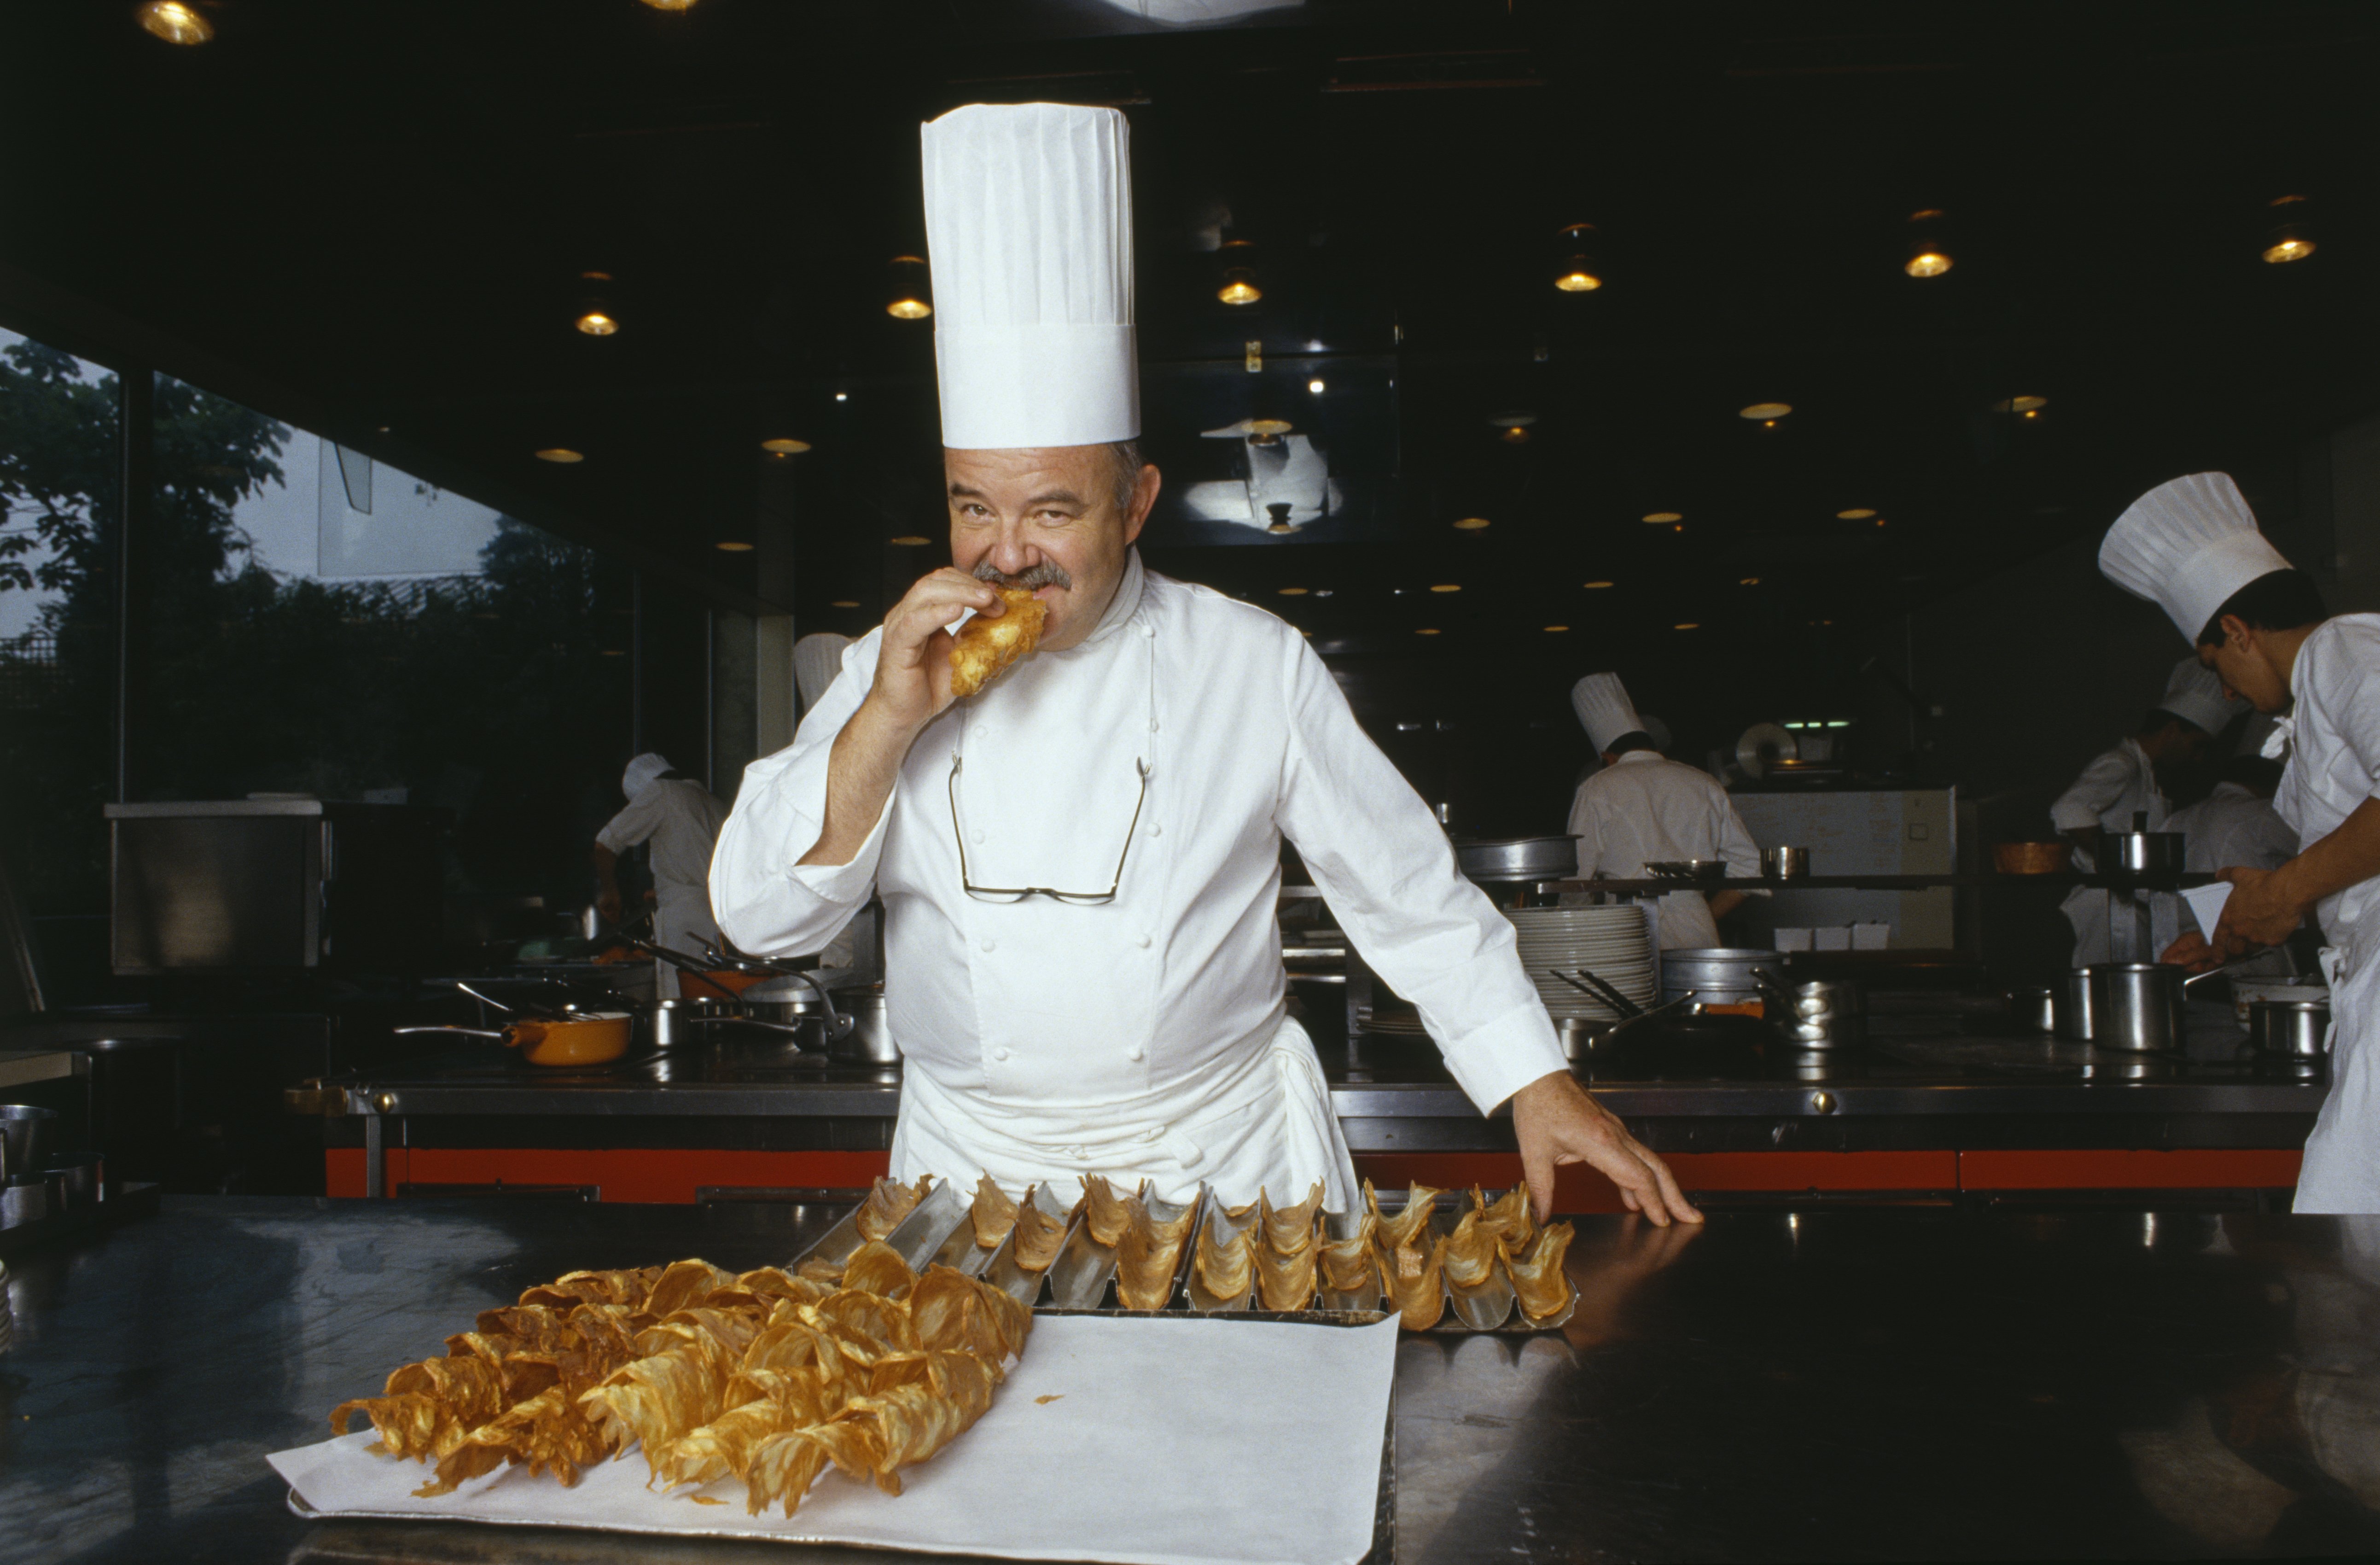 Le chef Pierre Troisgros teste des biscuits dans son restaurant "Troisgros" à Roanne qui s'est vu décerner 3 étoiles Michelin depuis 1968. | Photo : Getty Images